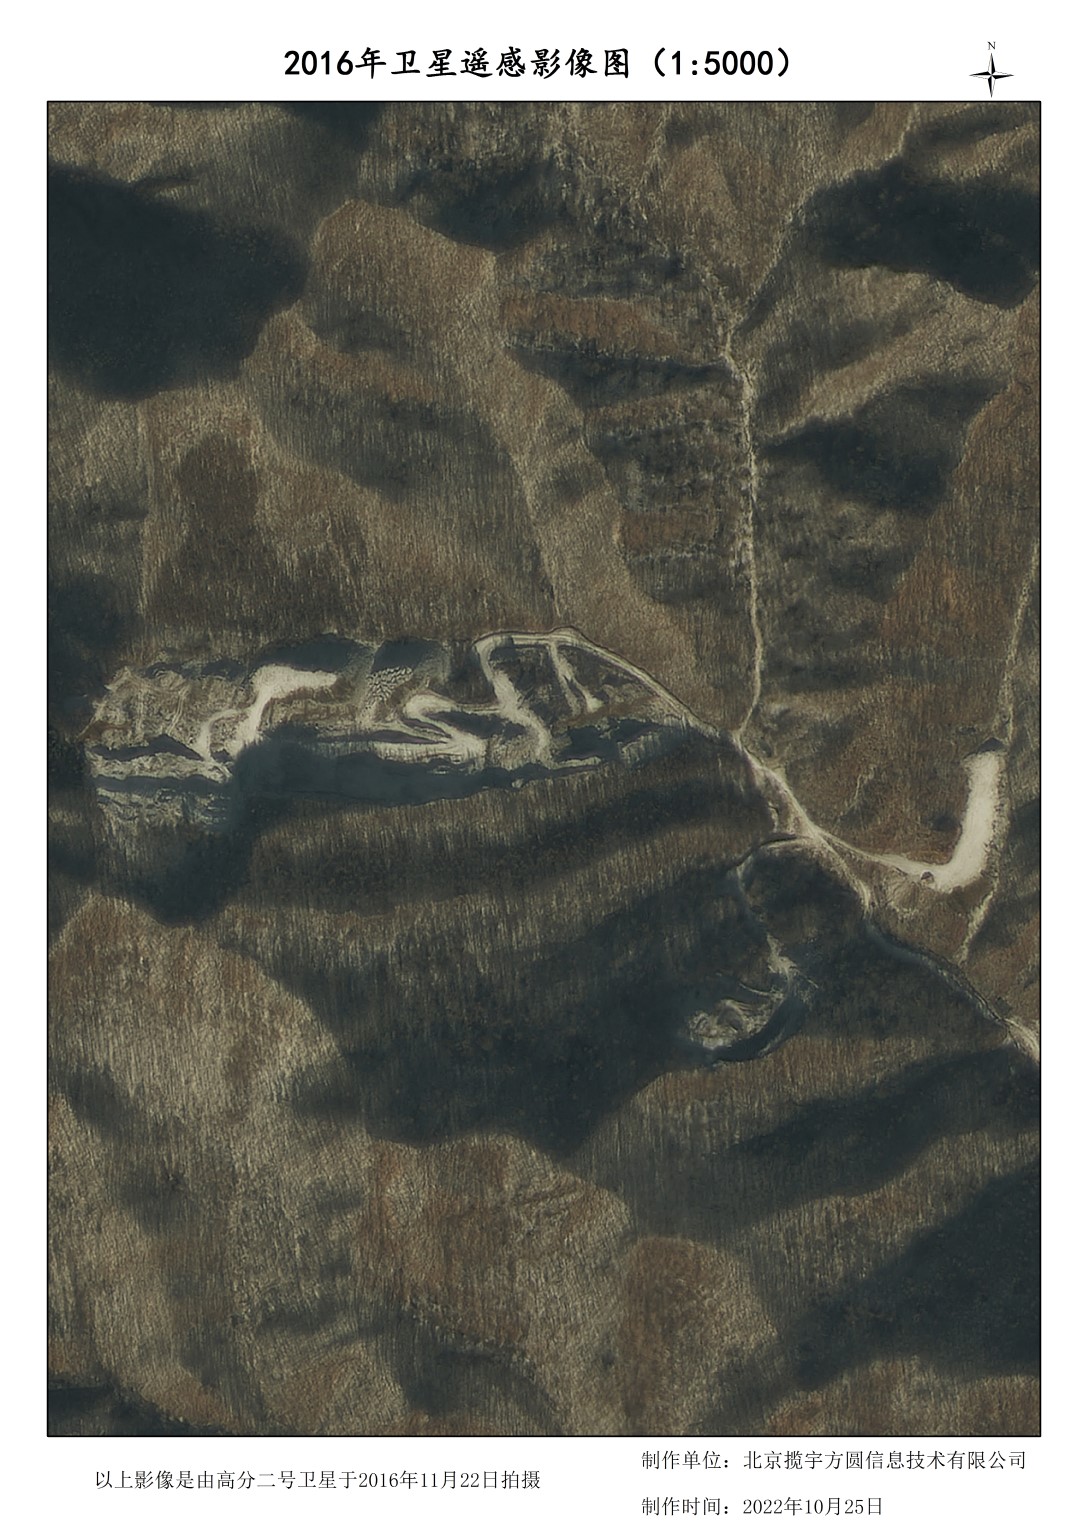 0.8米高分二号卫星山林地貌破坏影像样例